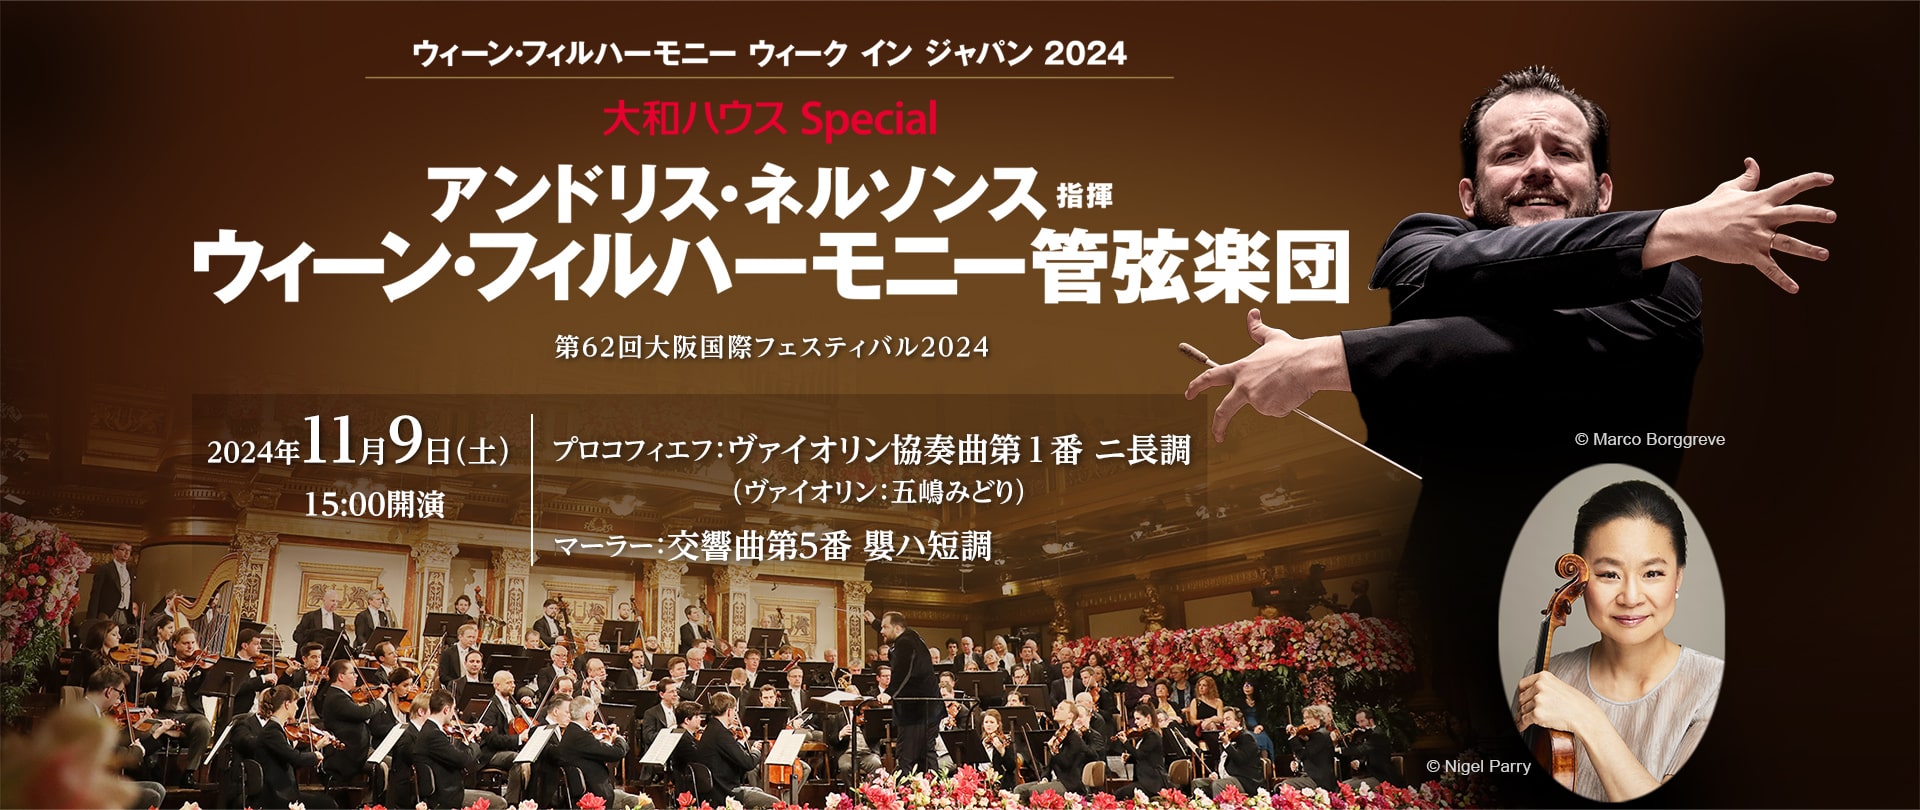 11/09 大和ハウス Special アンドリス・ネルソンス指揮 ウィーン・フィルハーモニー管弦楽団